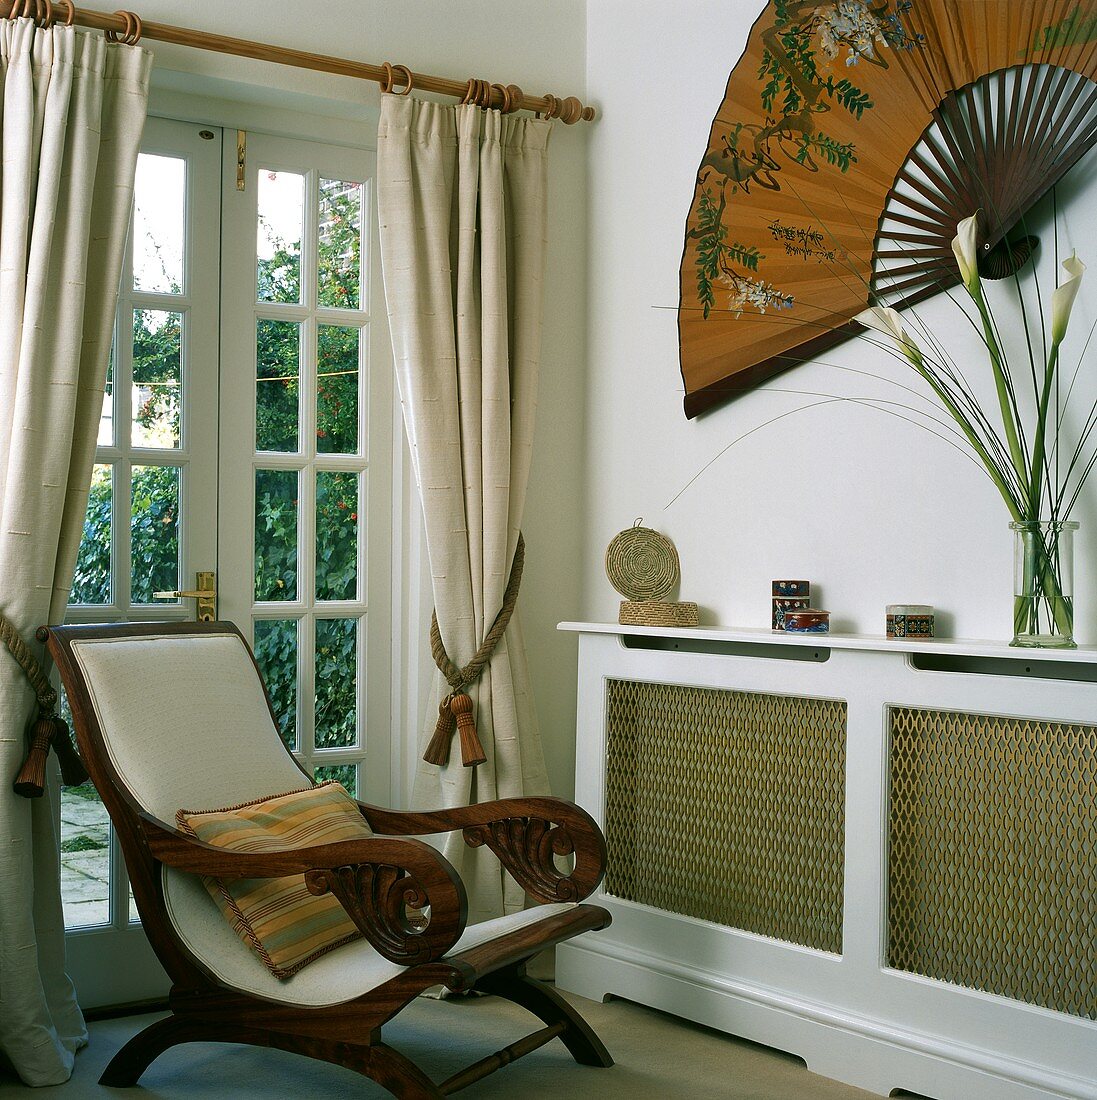 Armlehnstuhl (Planter's Chair) im Landhausstil vor Terrassentür und Wanddekoration mit großem Fächer über verkleidetem Heizkörper